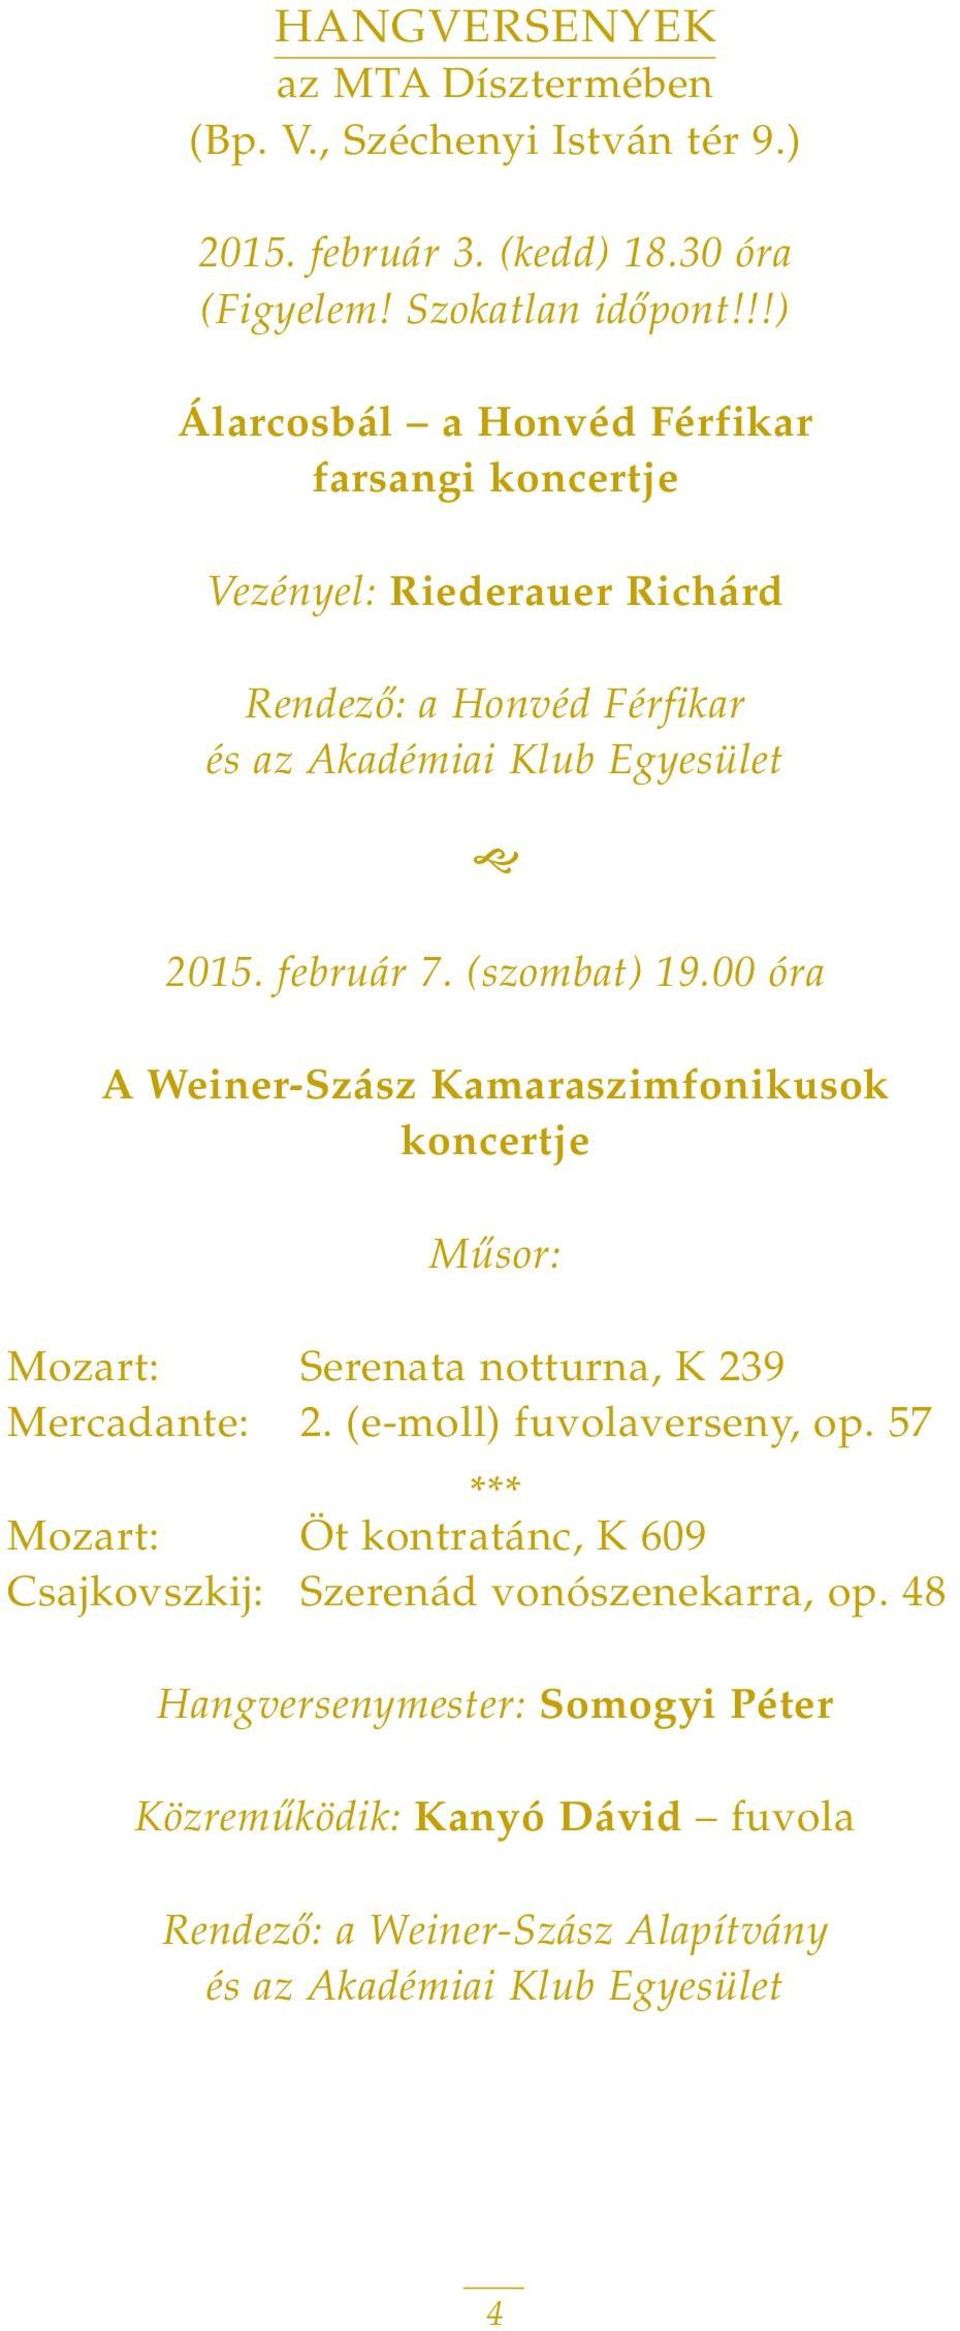 (szombat) 19.00 óra A Weiner-Szász Kamaraszimfonikusok koncertje Mûsor: Mozart: Serenata notturna, K 239 Mercadante: 2. (e-moll) fuvolaverseny, op.